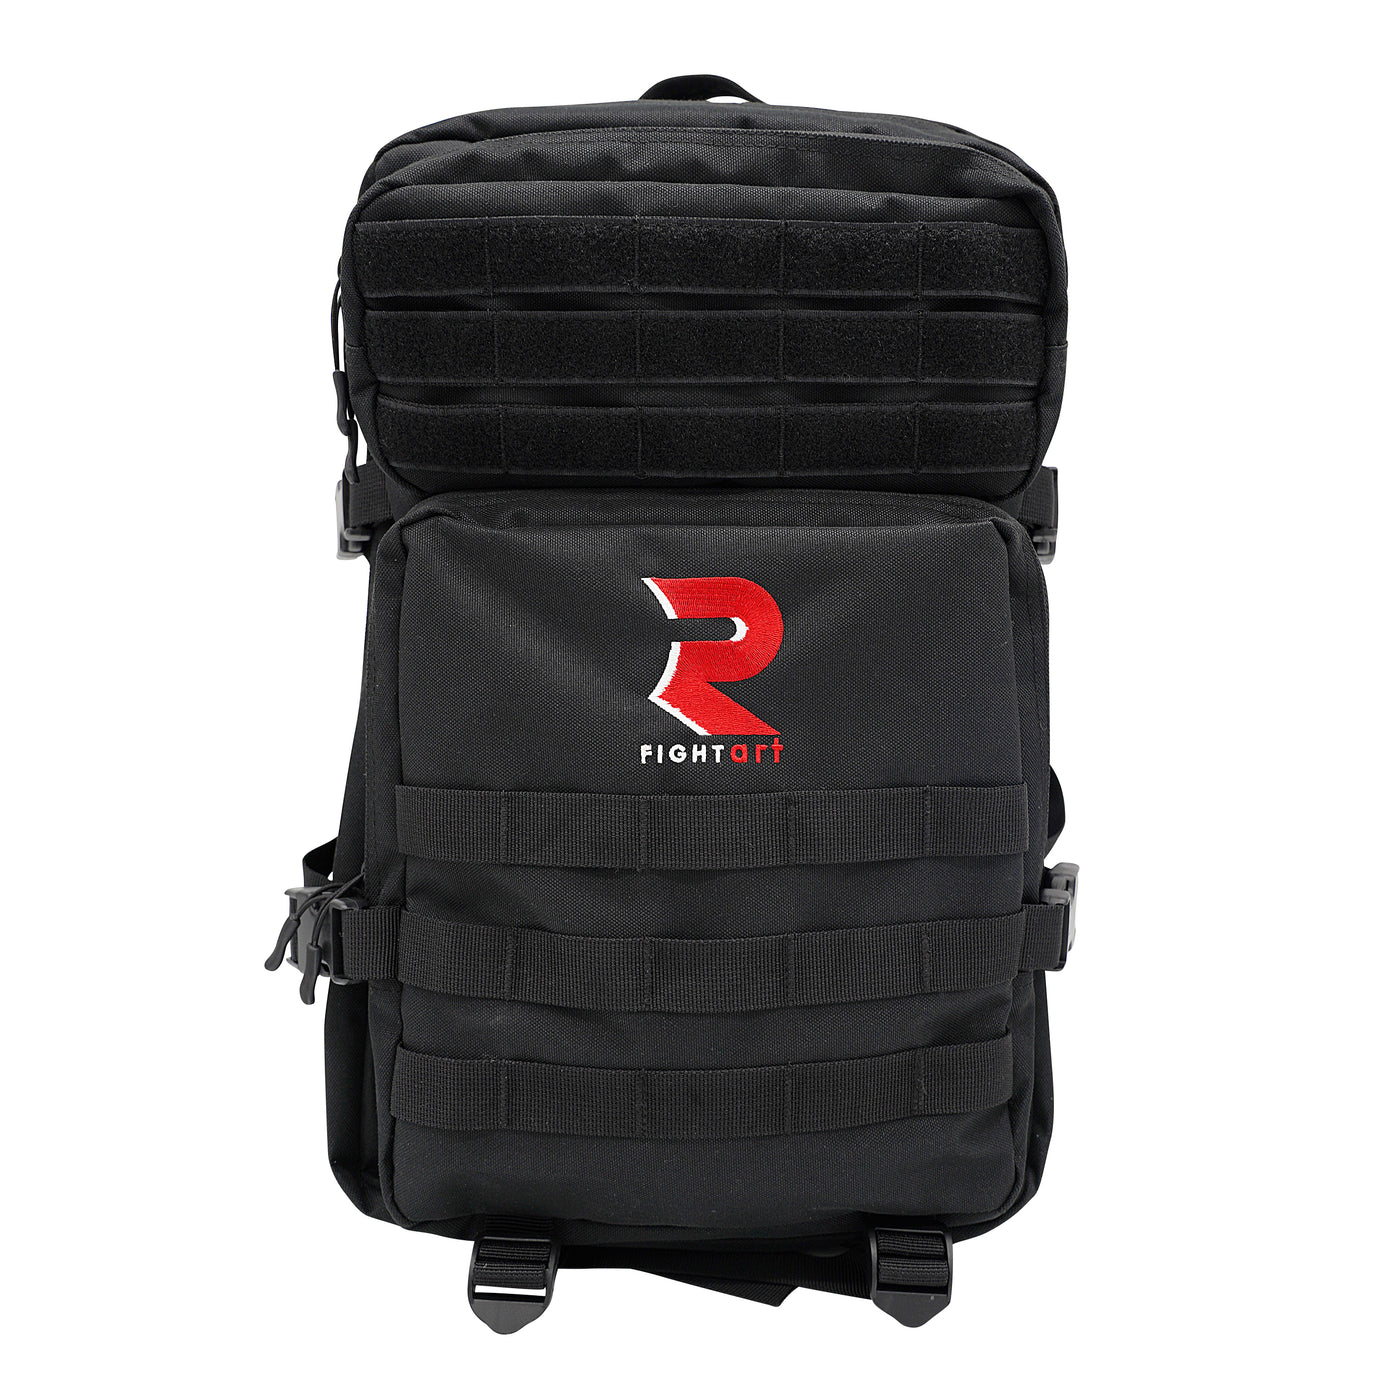 Martial Arts Sports Bag - Tactical model